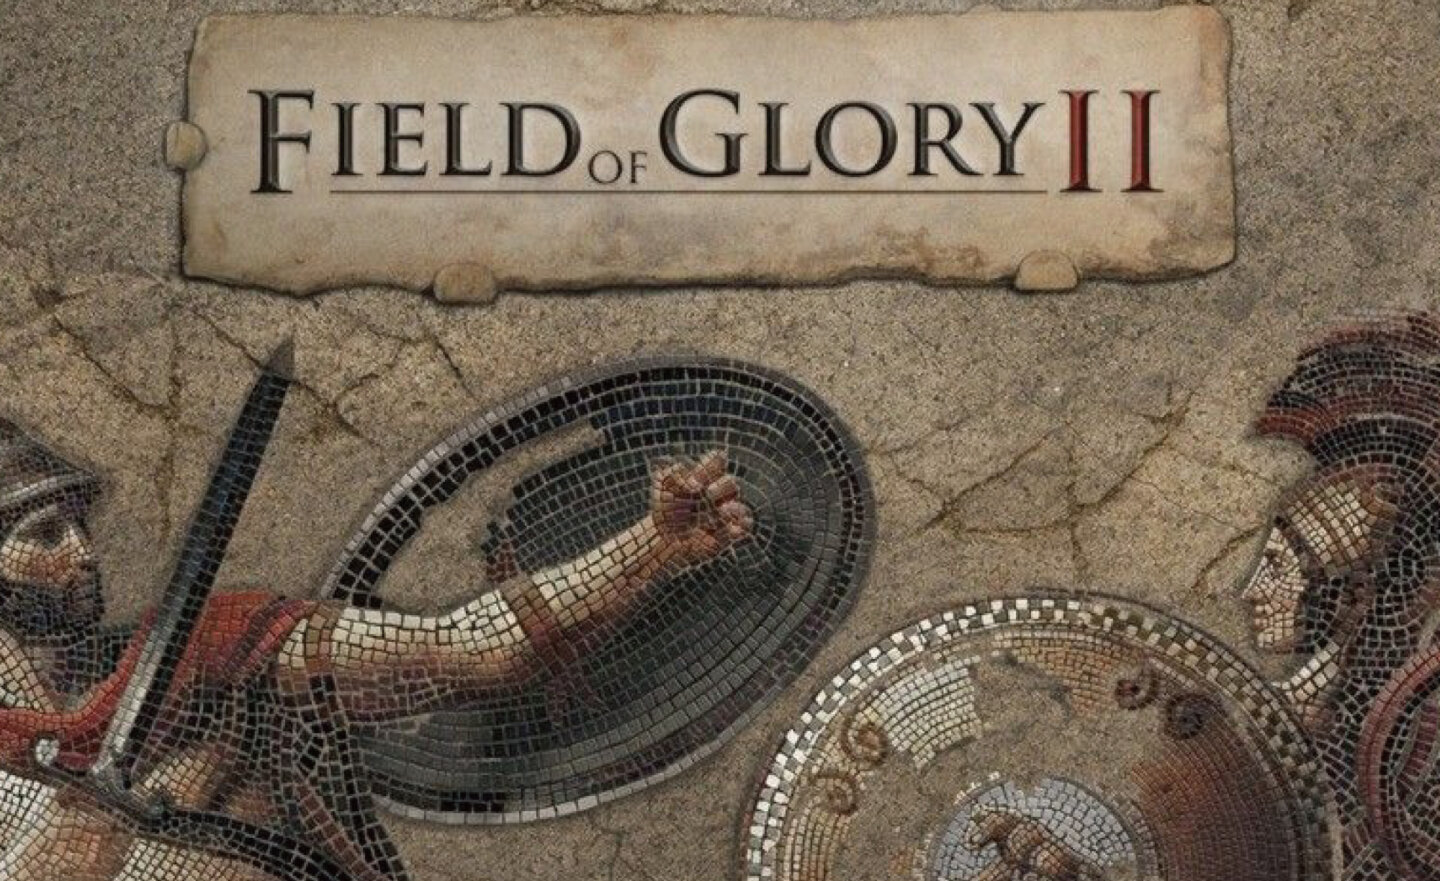 【限時免費】Steam 放送《Field of Glory II 榮耀之地 2》，6 月 9 日上午 12:00 前永久保留